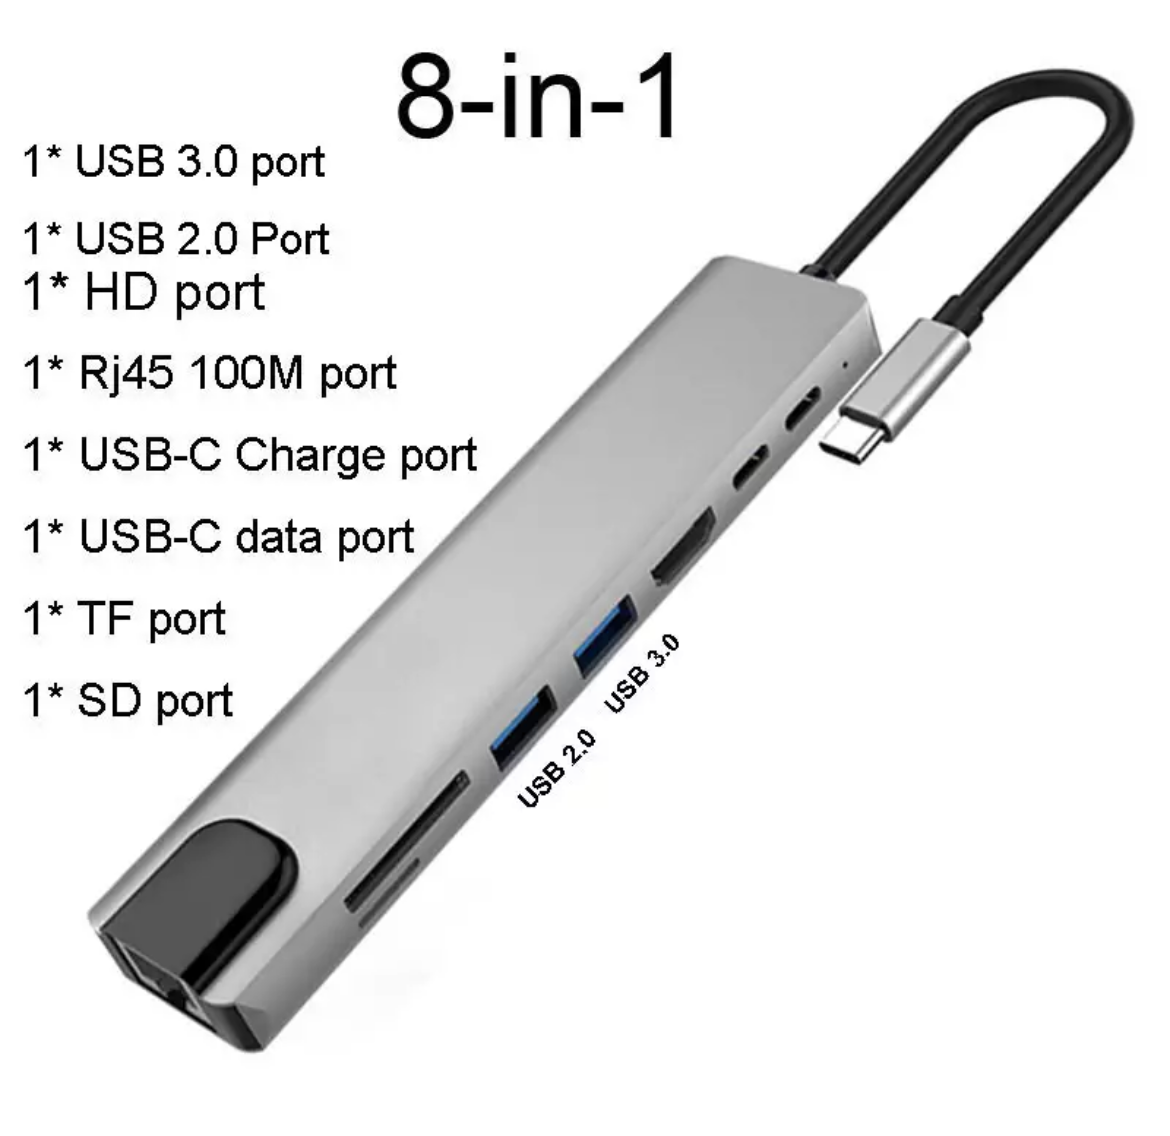 Adattatore / Adapter USB C HUB 8 in 1 per Mac/PC